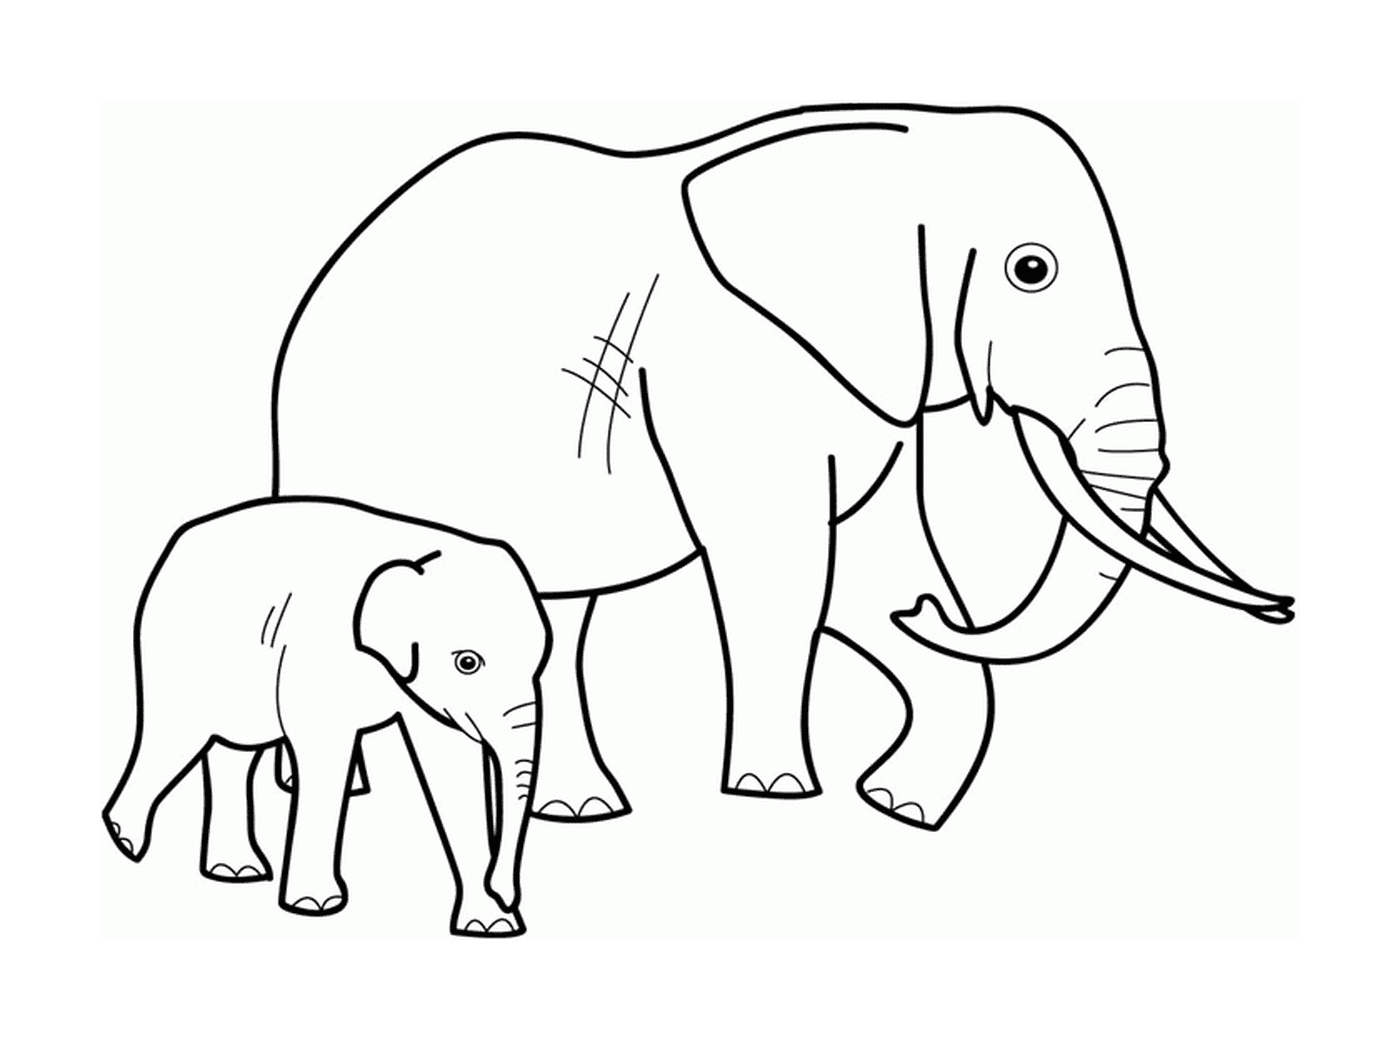  Un elefante adulto e un elefante uno accanto all'altro 